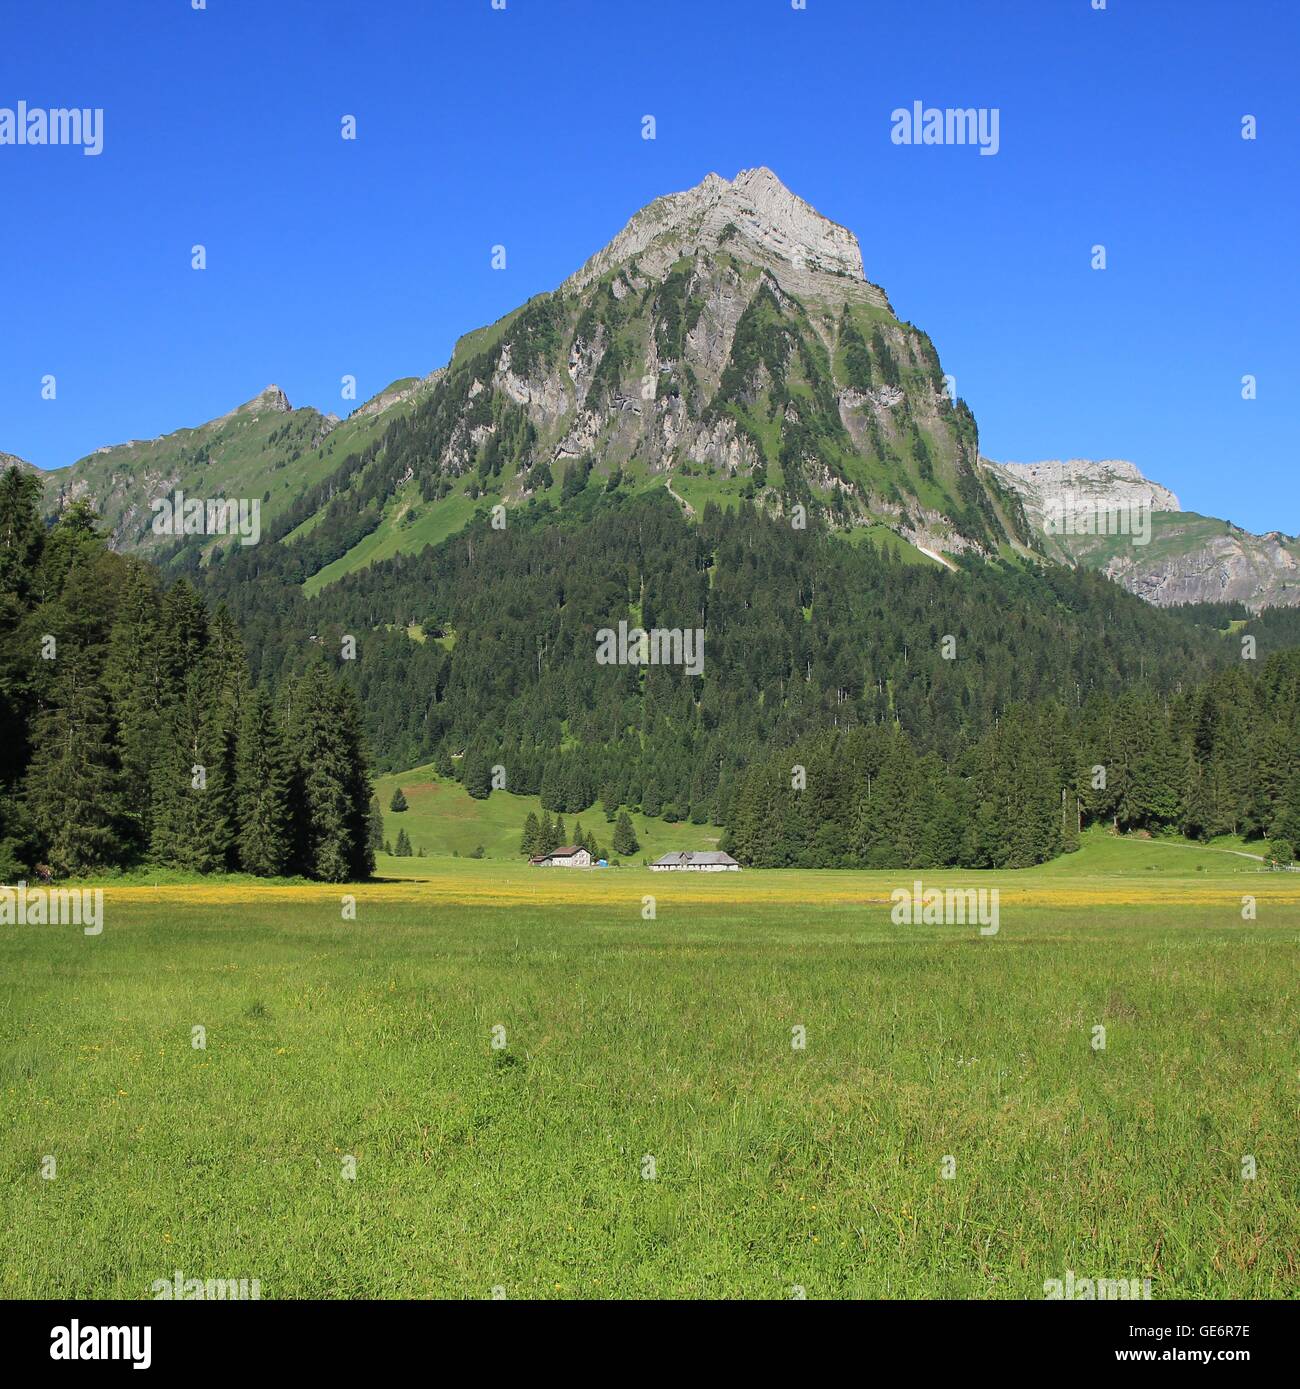 Mt Brunnelistock, Tannenwald und grüne Wiese. Natur-Hintergrund. Stockfoto